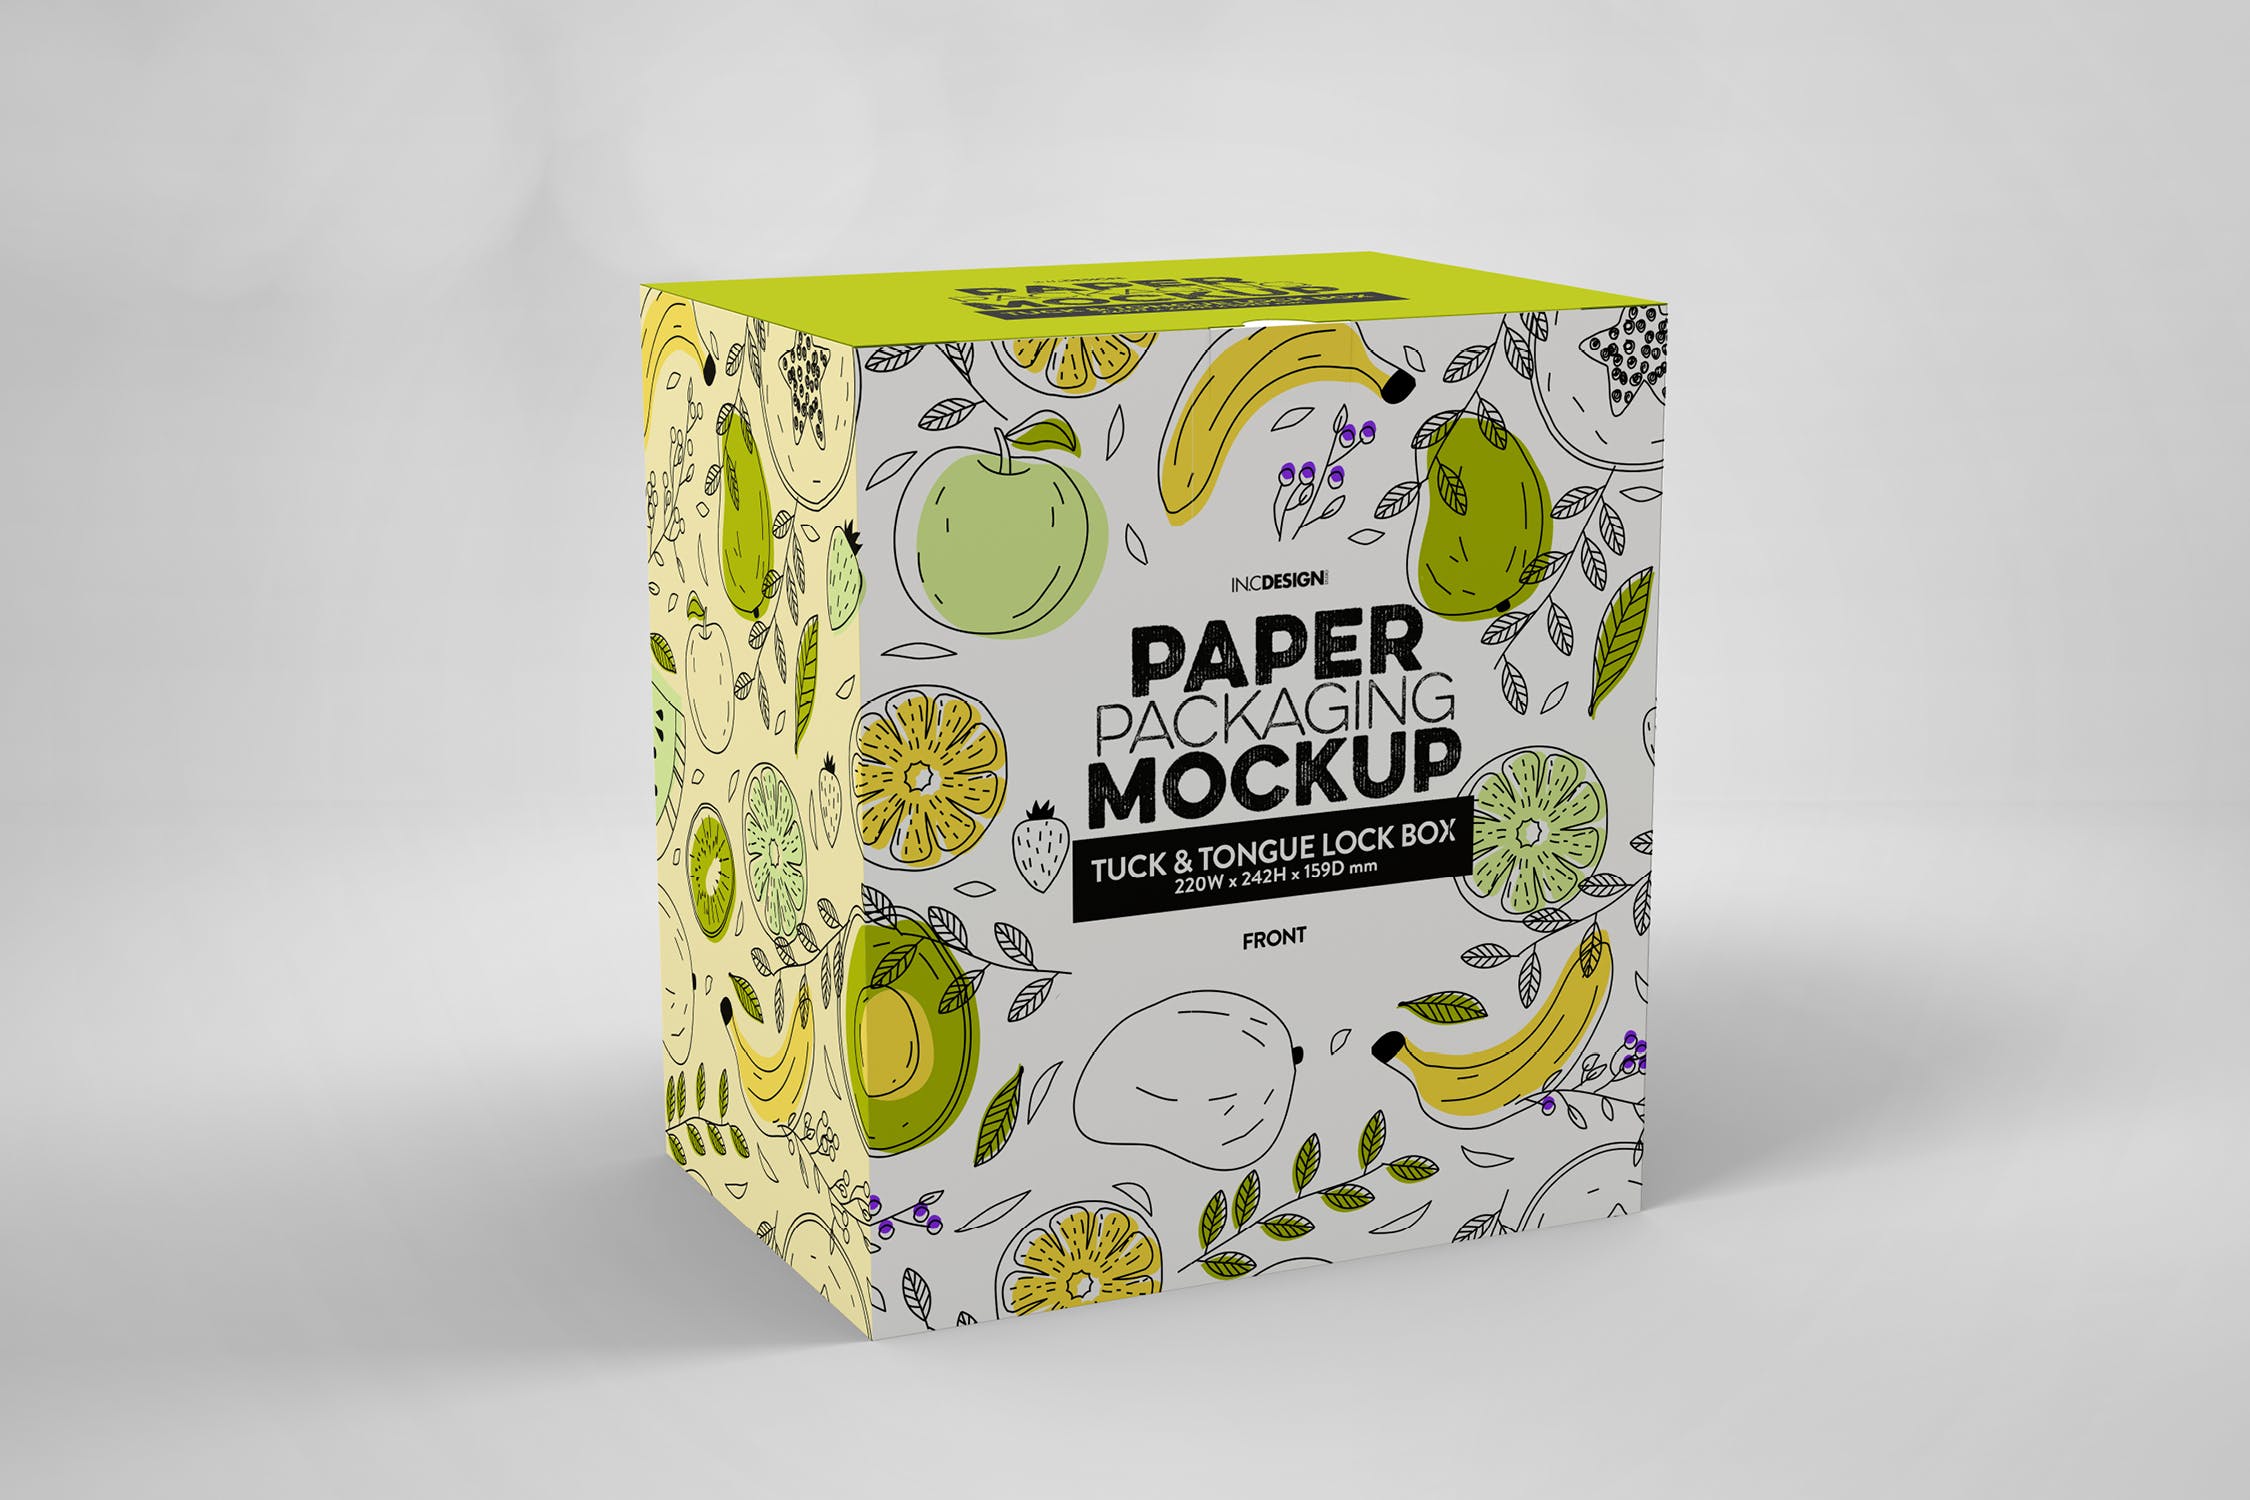 产品包装纸盒外观设计样机模板 Paper Box Tuck & Tongue Lock Mockup插图(1)